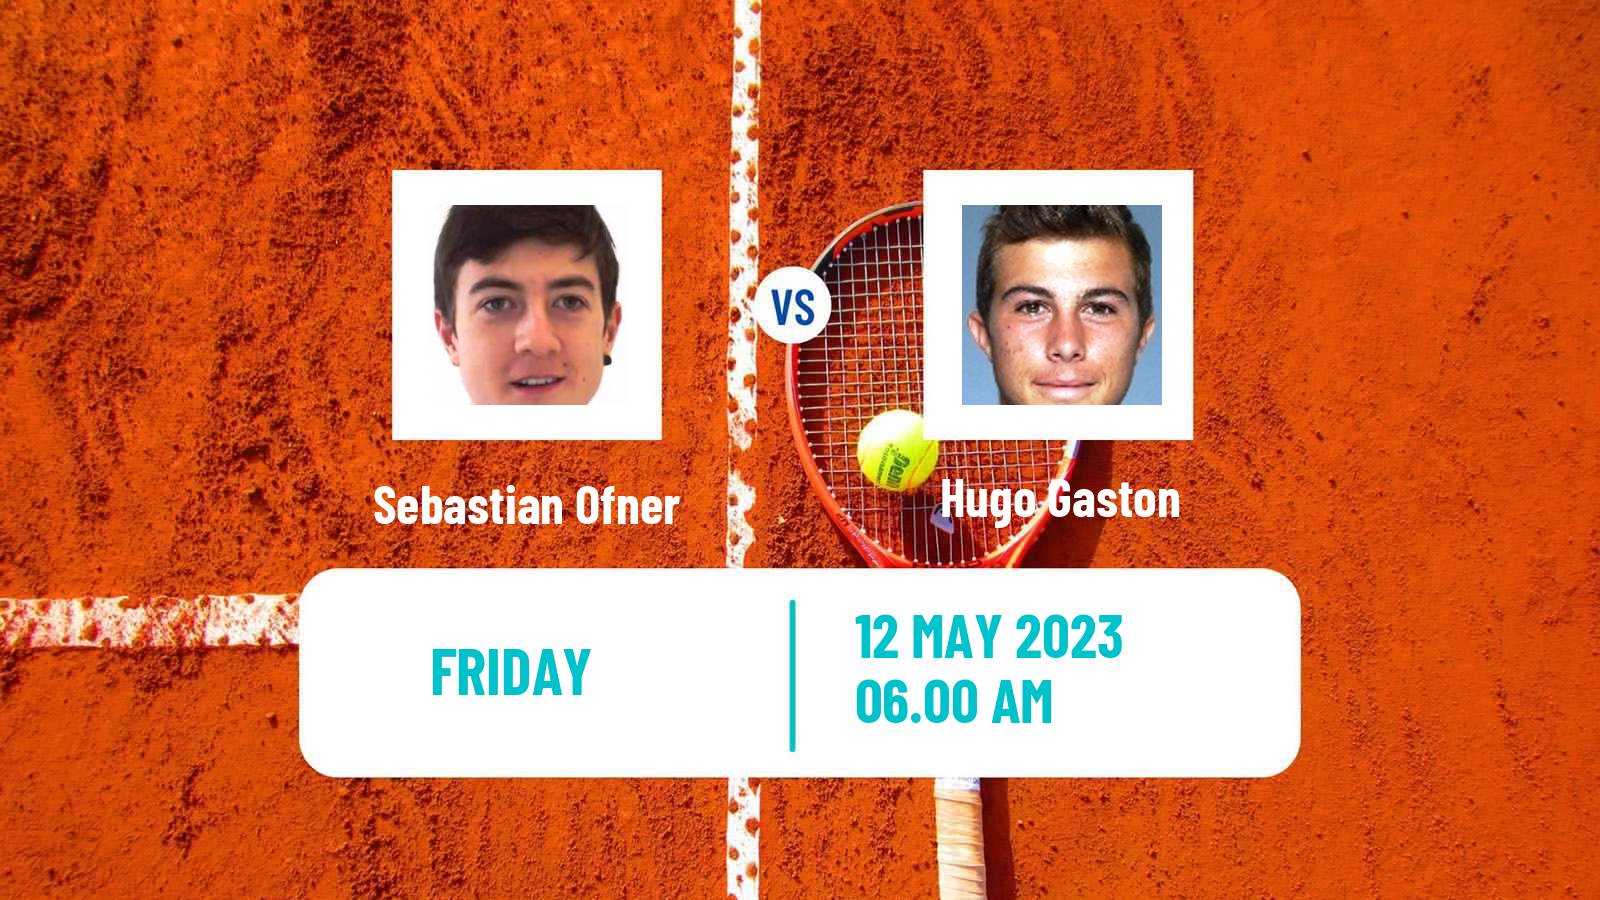 Tennis ATP Challenger Sebastian Ofner - Hugo Gaston